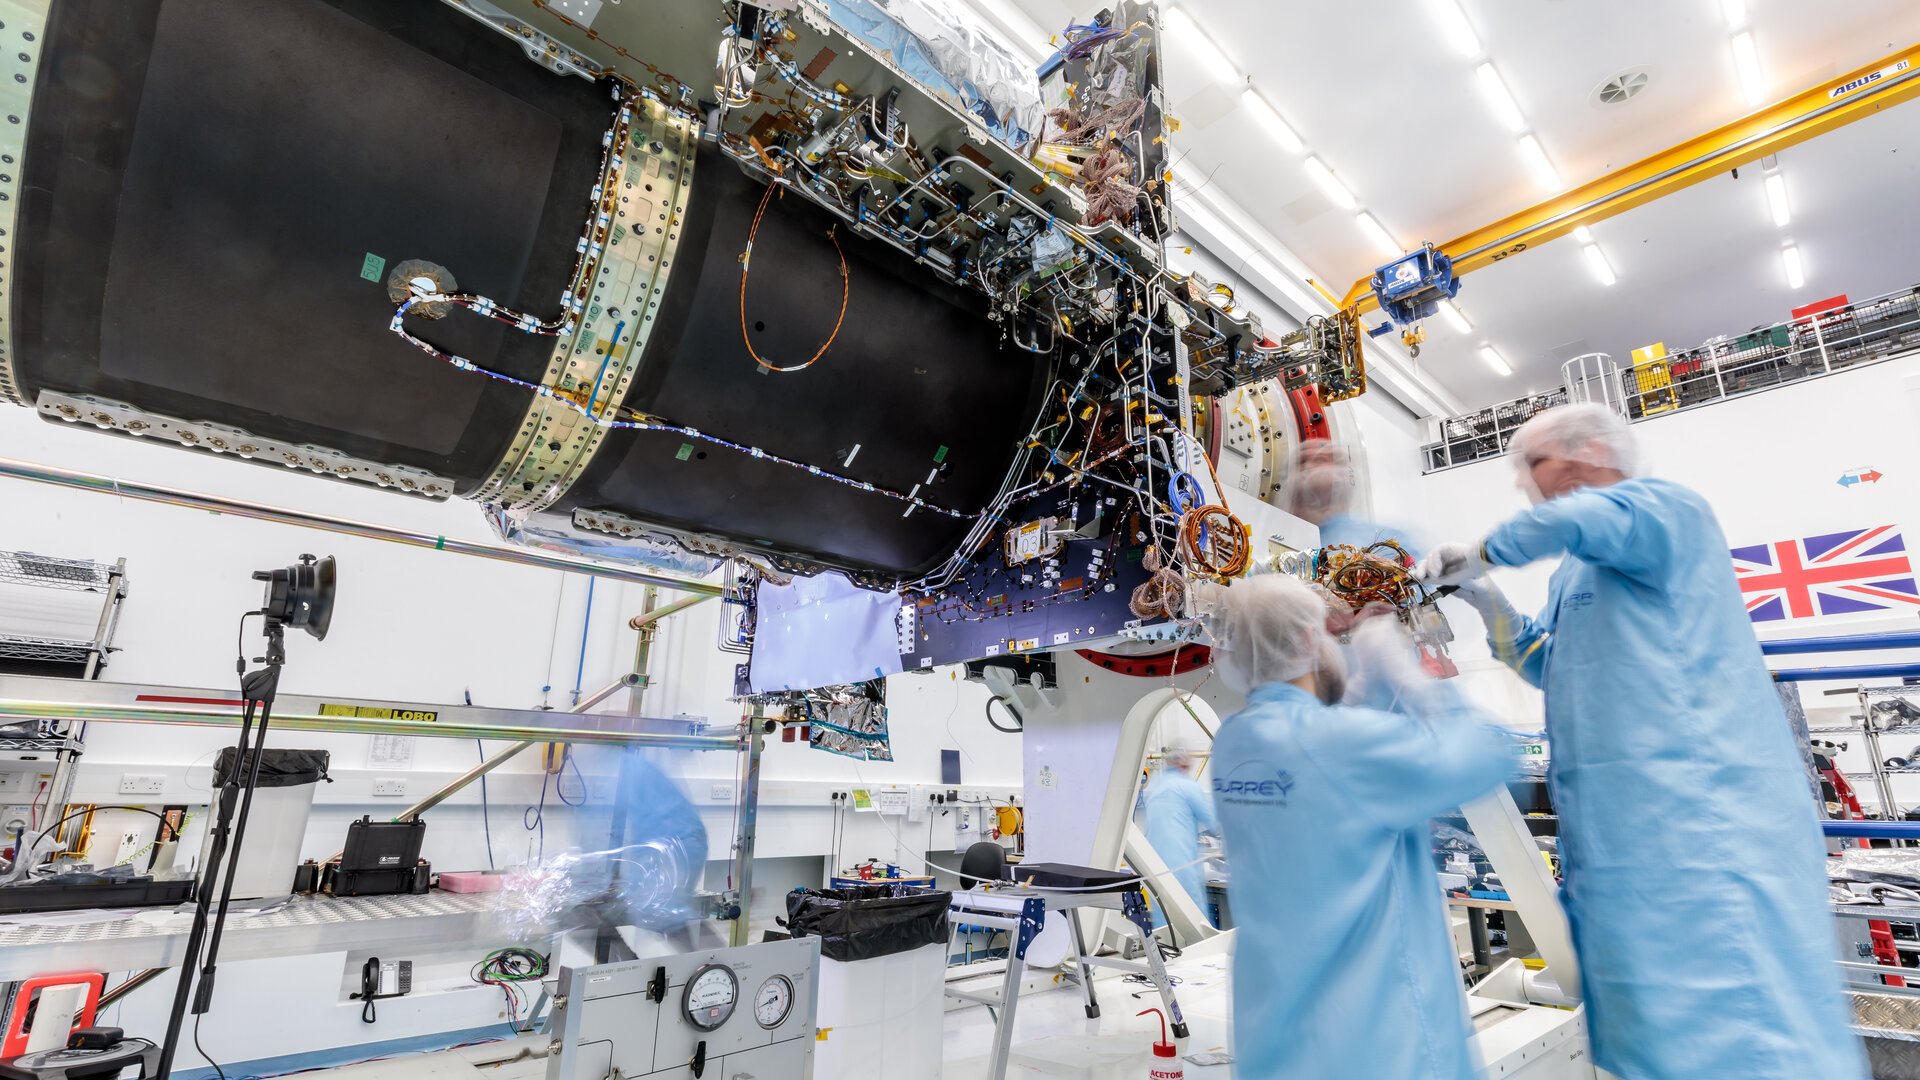 The Eutelsat Quantum satellite